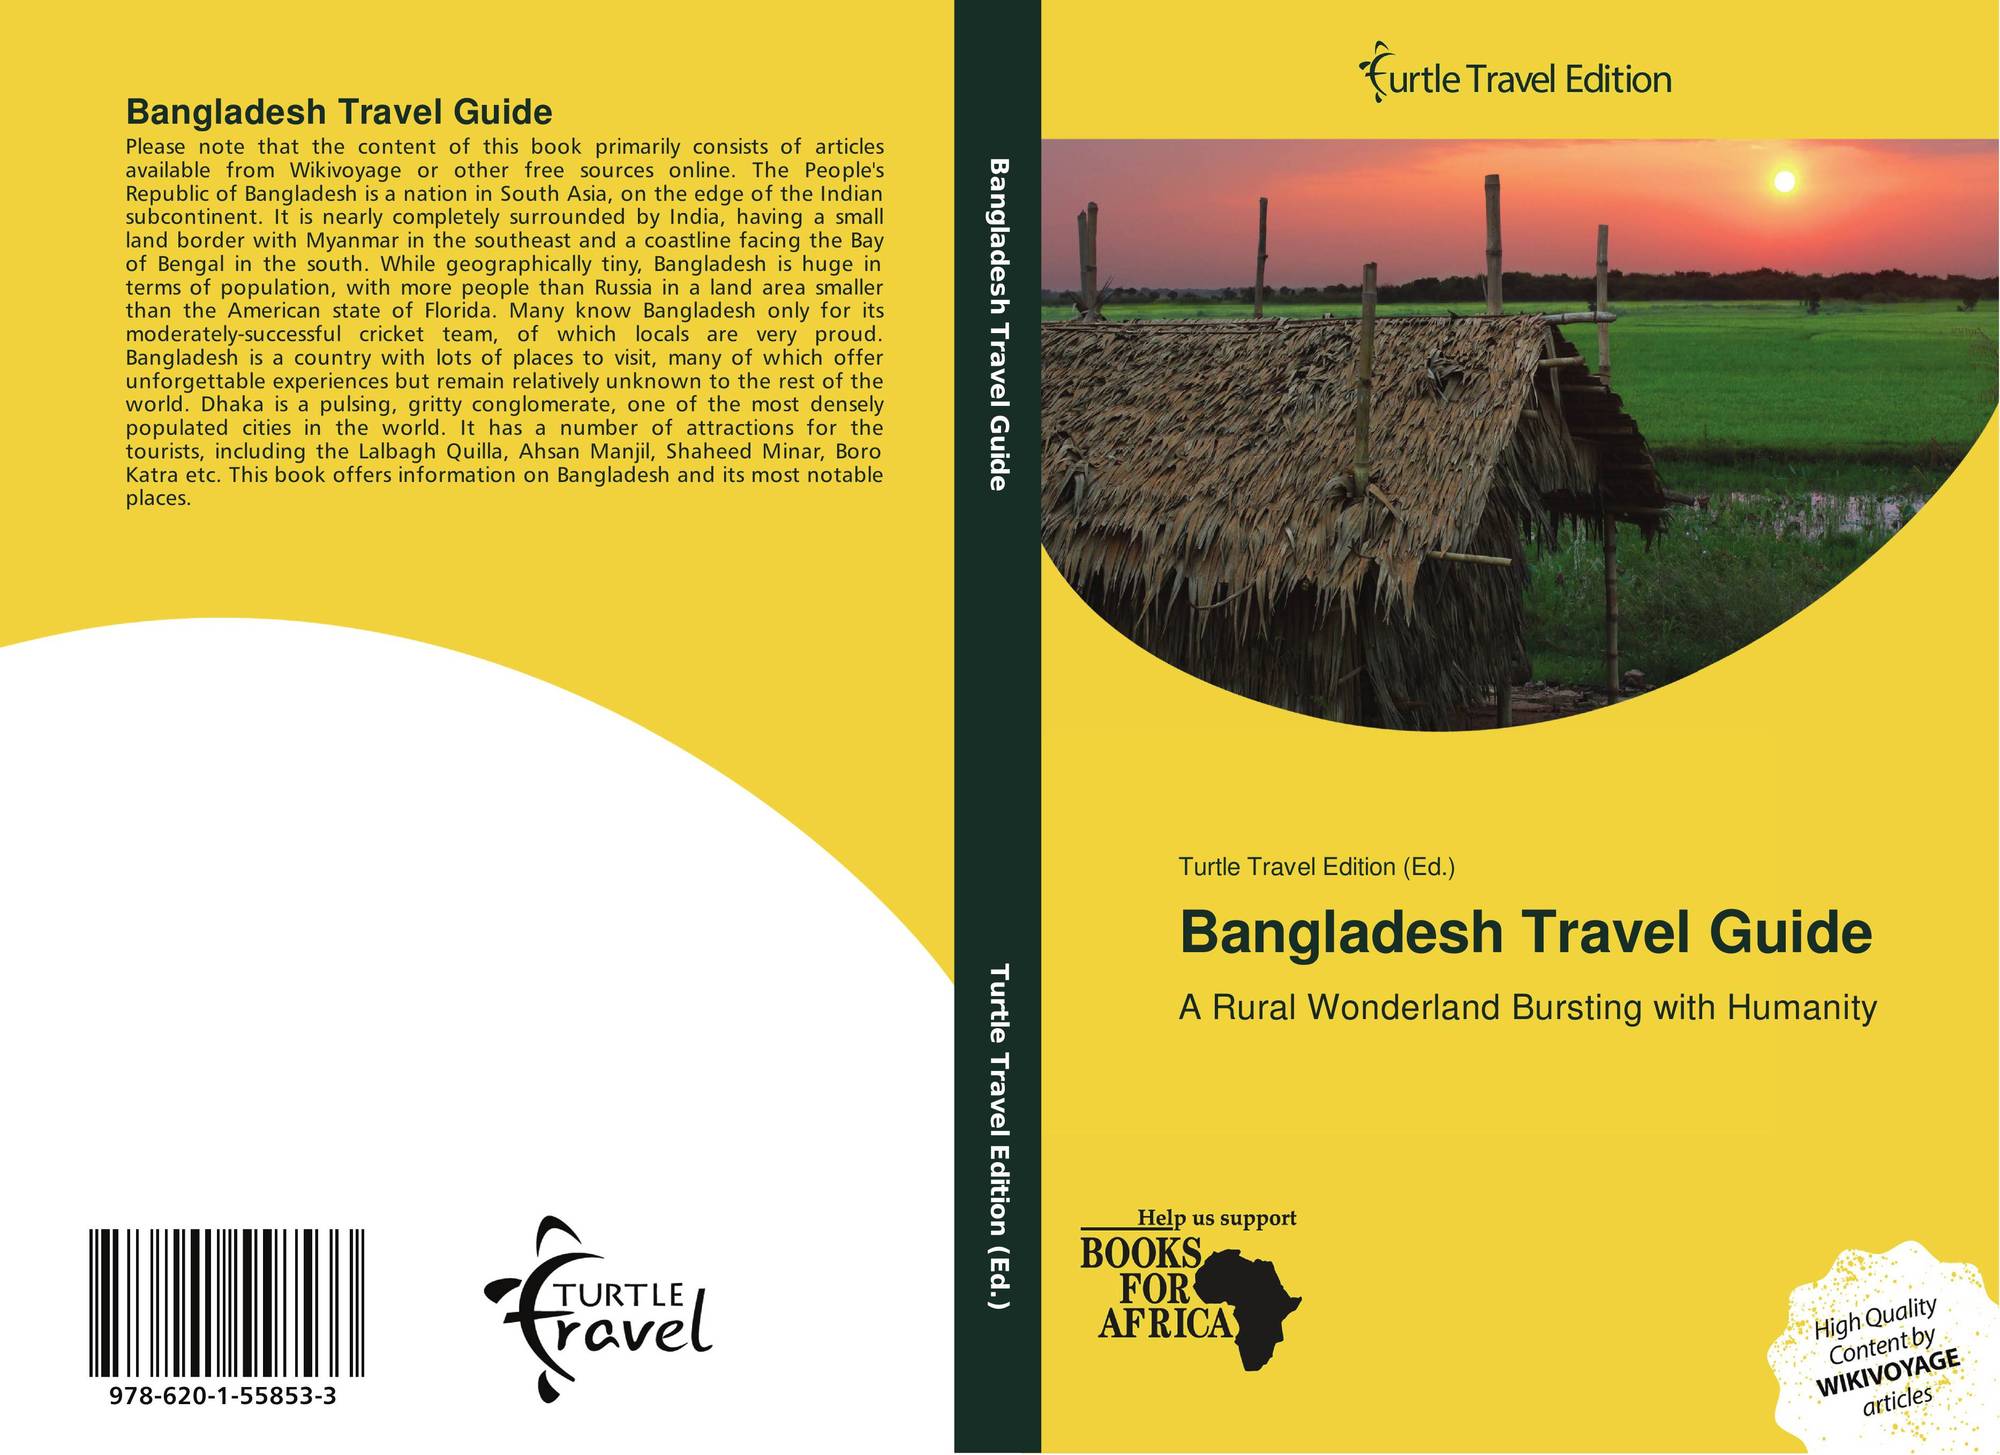 travel guide for bangladesh